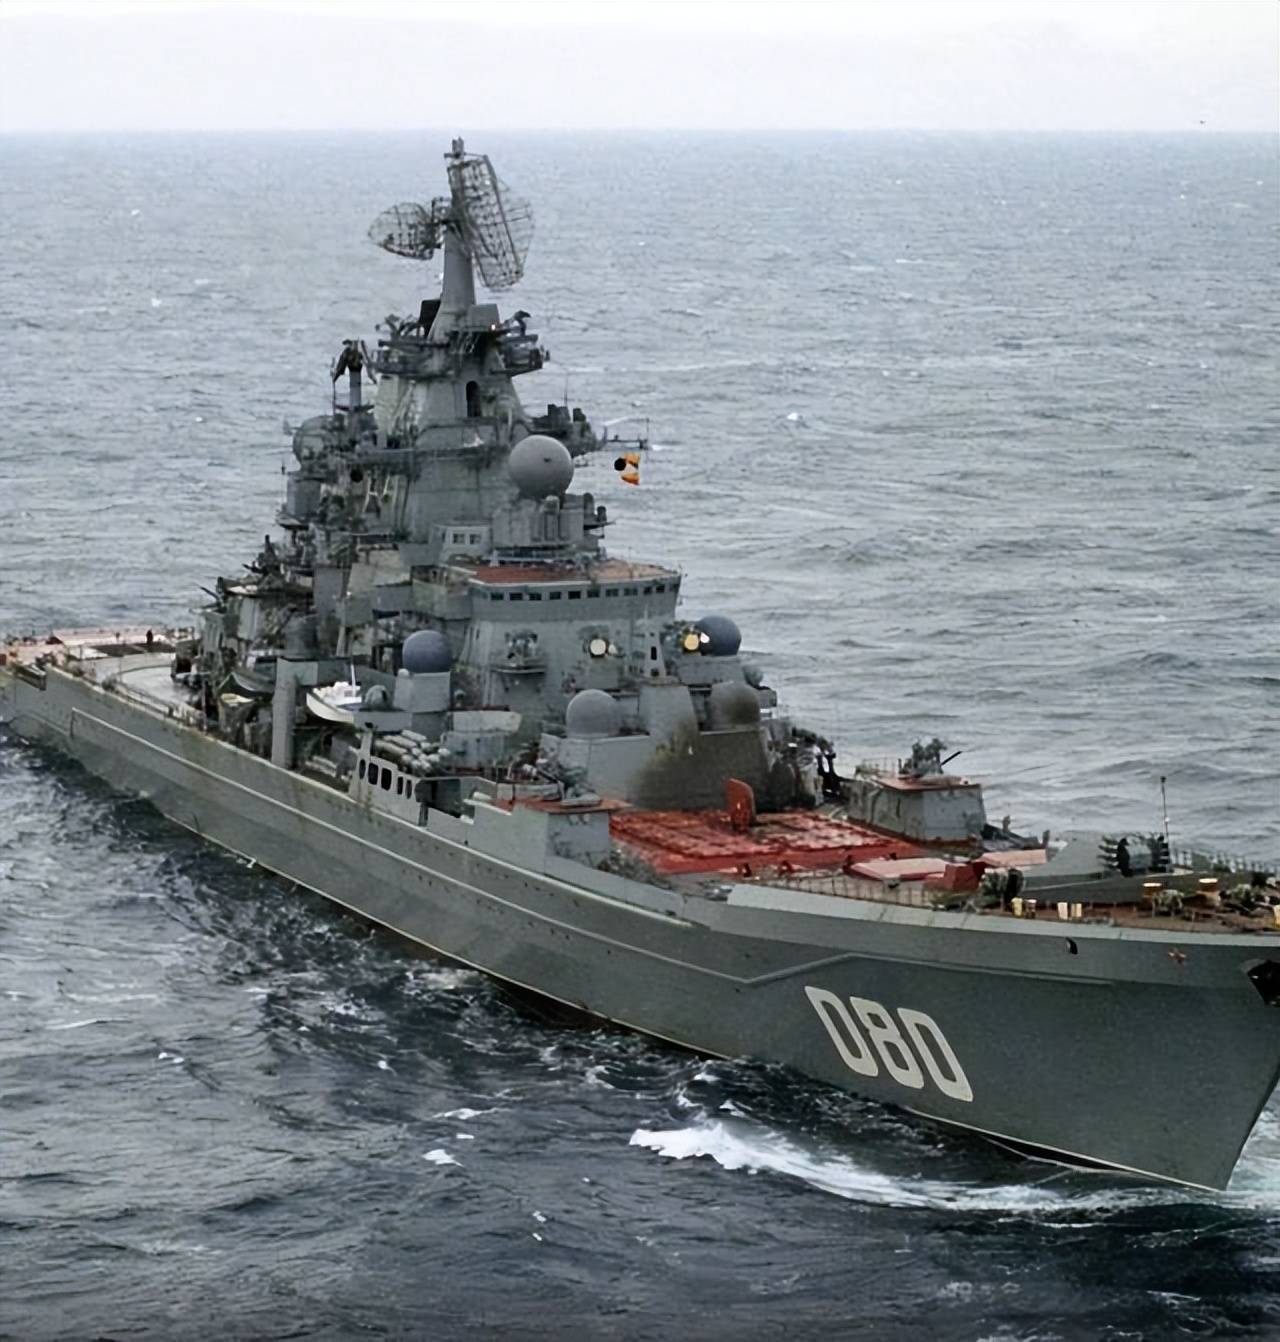 整体上看,纳希莫夫海军上将号实力强是毋庸置疑的,是俄罗斯军事强大的